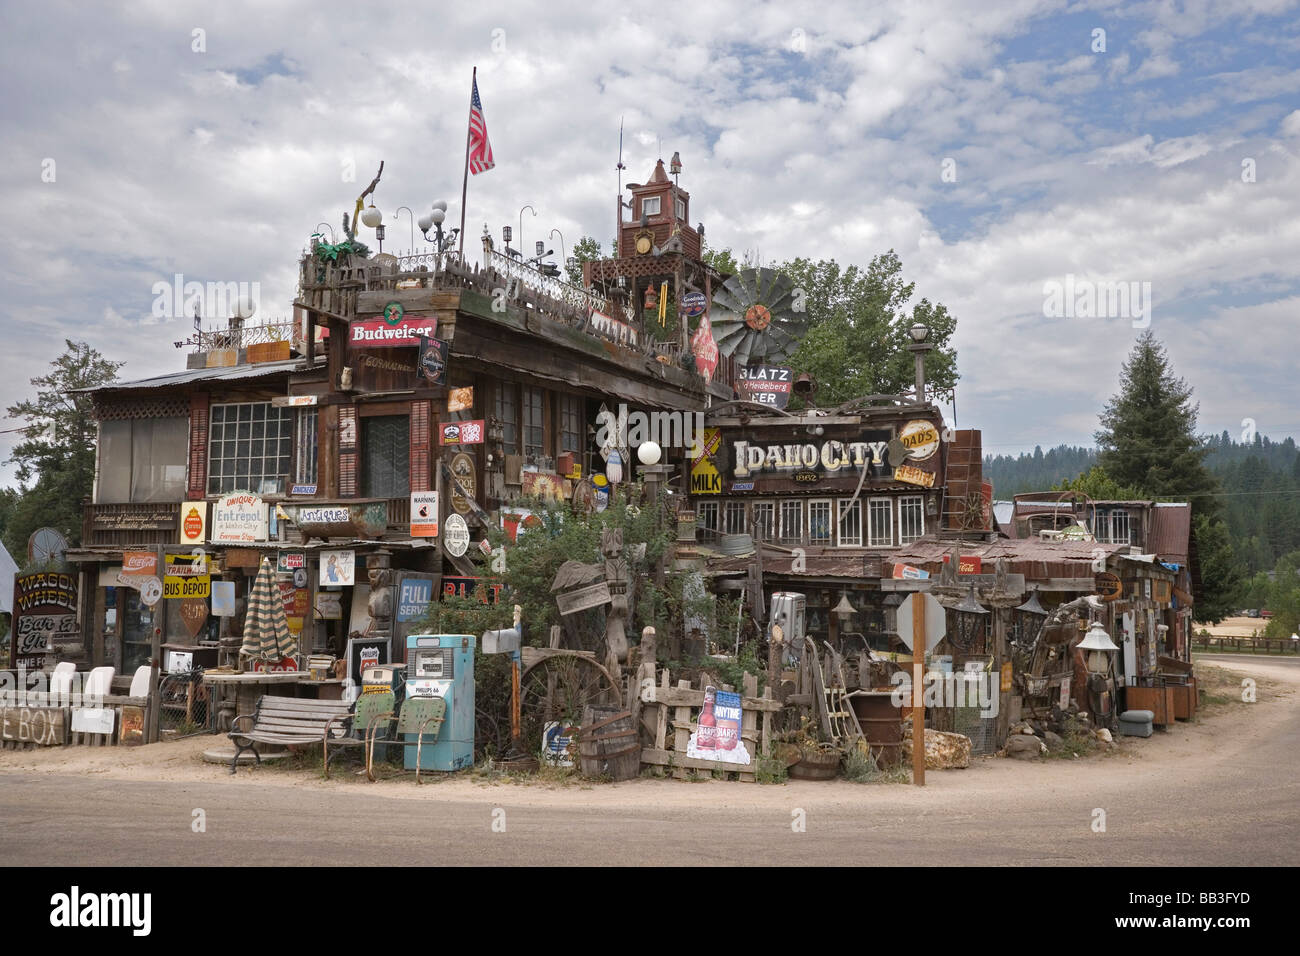 USA, Idaho, Idaho City. Wagon Wheel Bar & Grill mit alten Erinnerungsstücken umgeben. Stockfoto